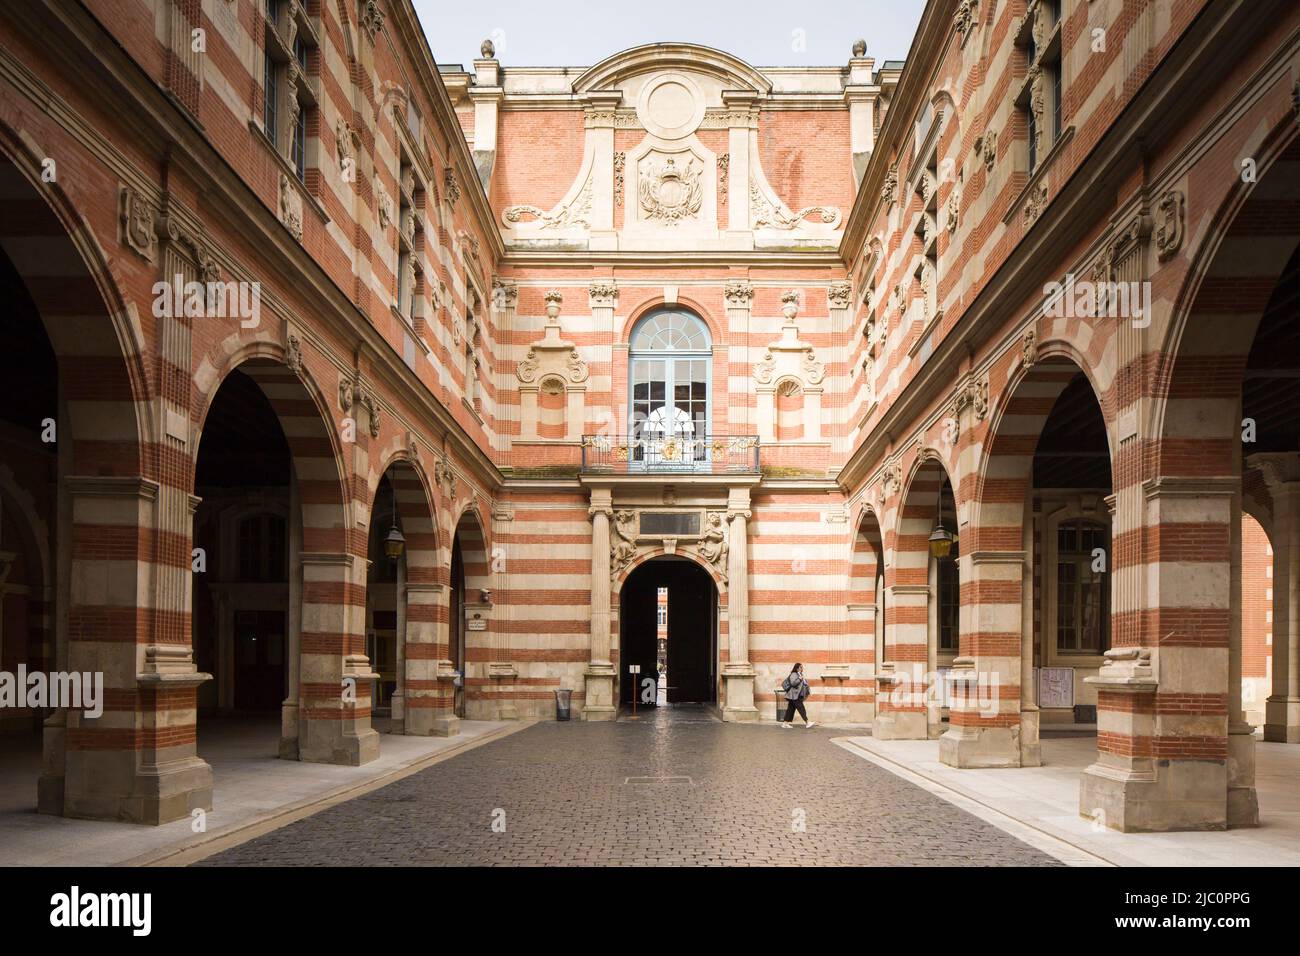 Le Capitole de Toulouse (Hôtel de ville ou Hôtel de ville), France. Cour intérieure avec motifs Renaissance. Banque D'Images